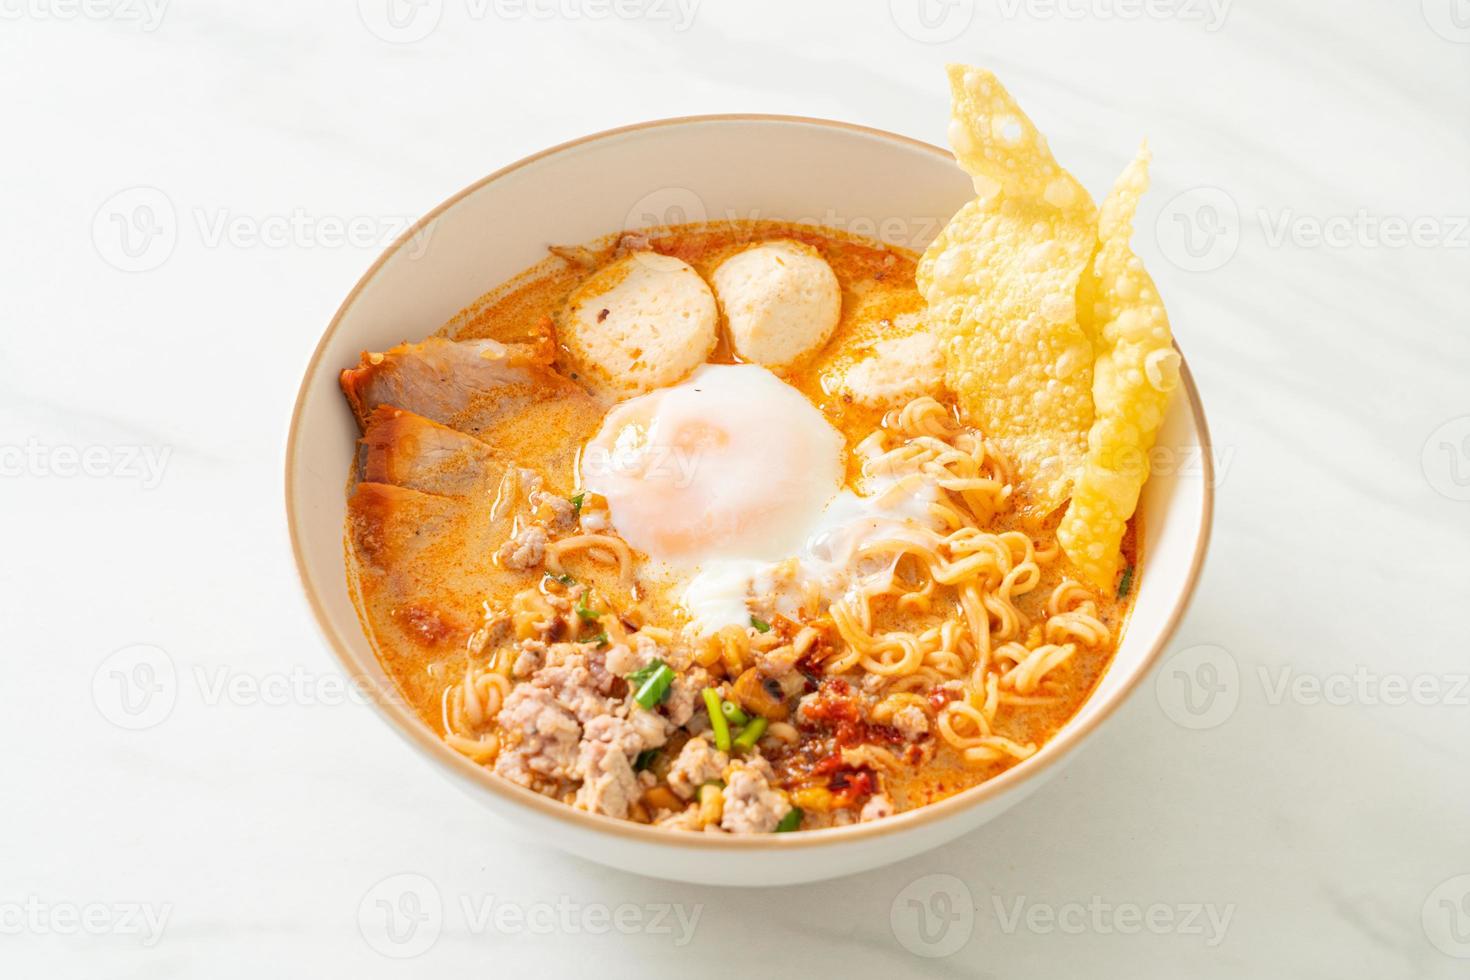 macarrão instantâneo com carne de porco e almôndegas em sopa picante ou macarrão tom yum em estilo asiático foto